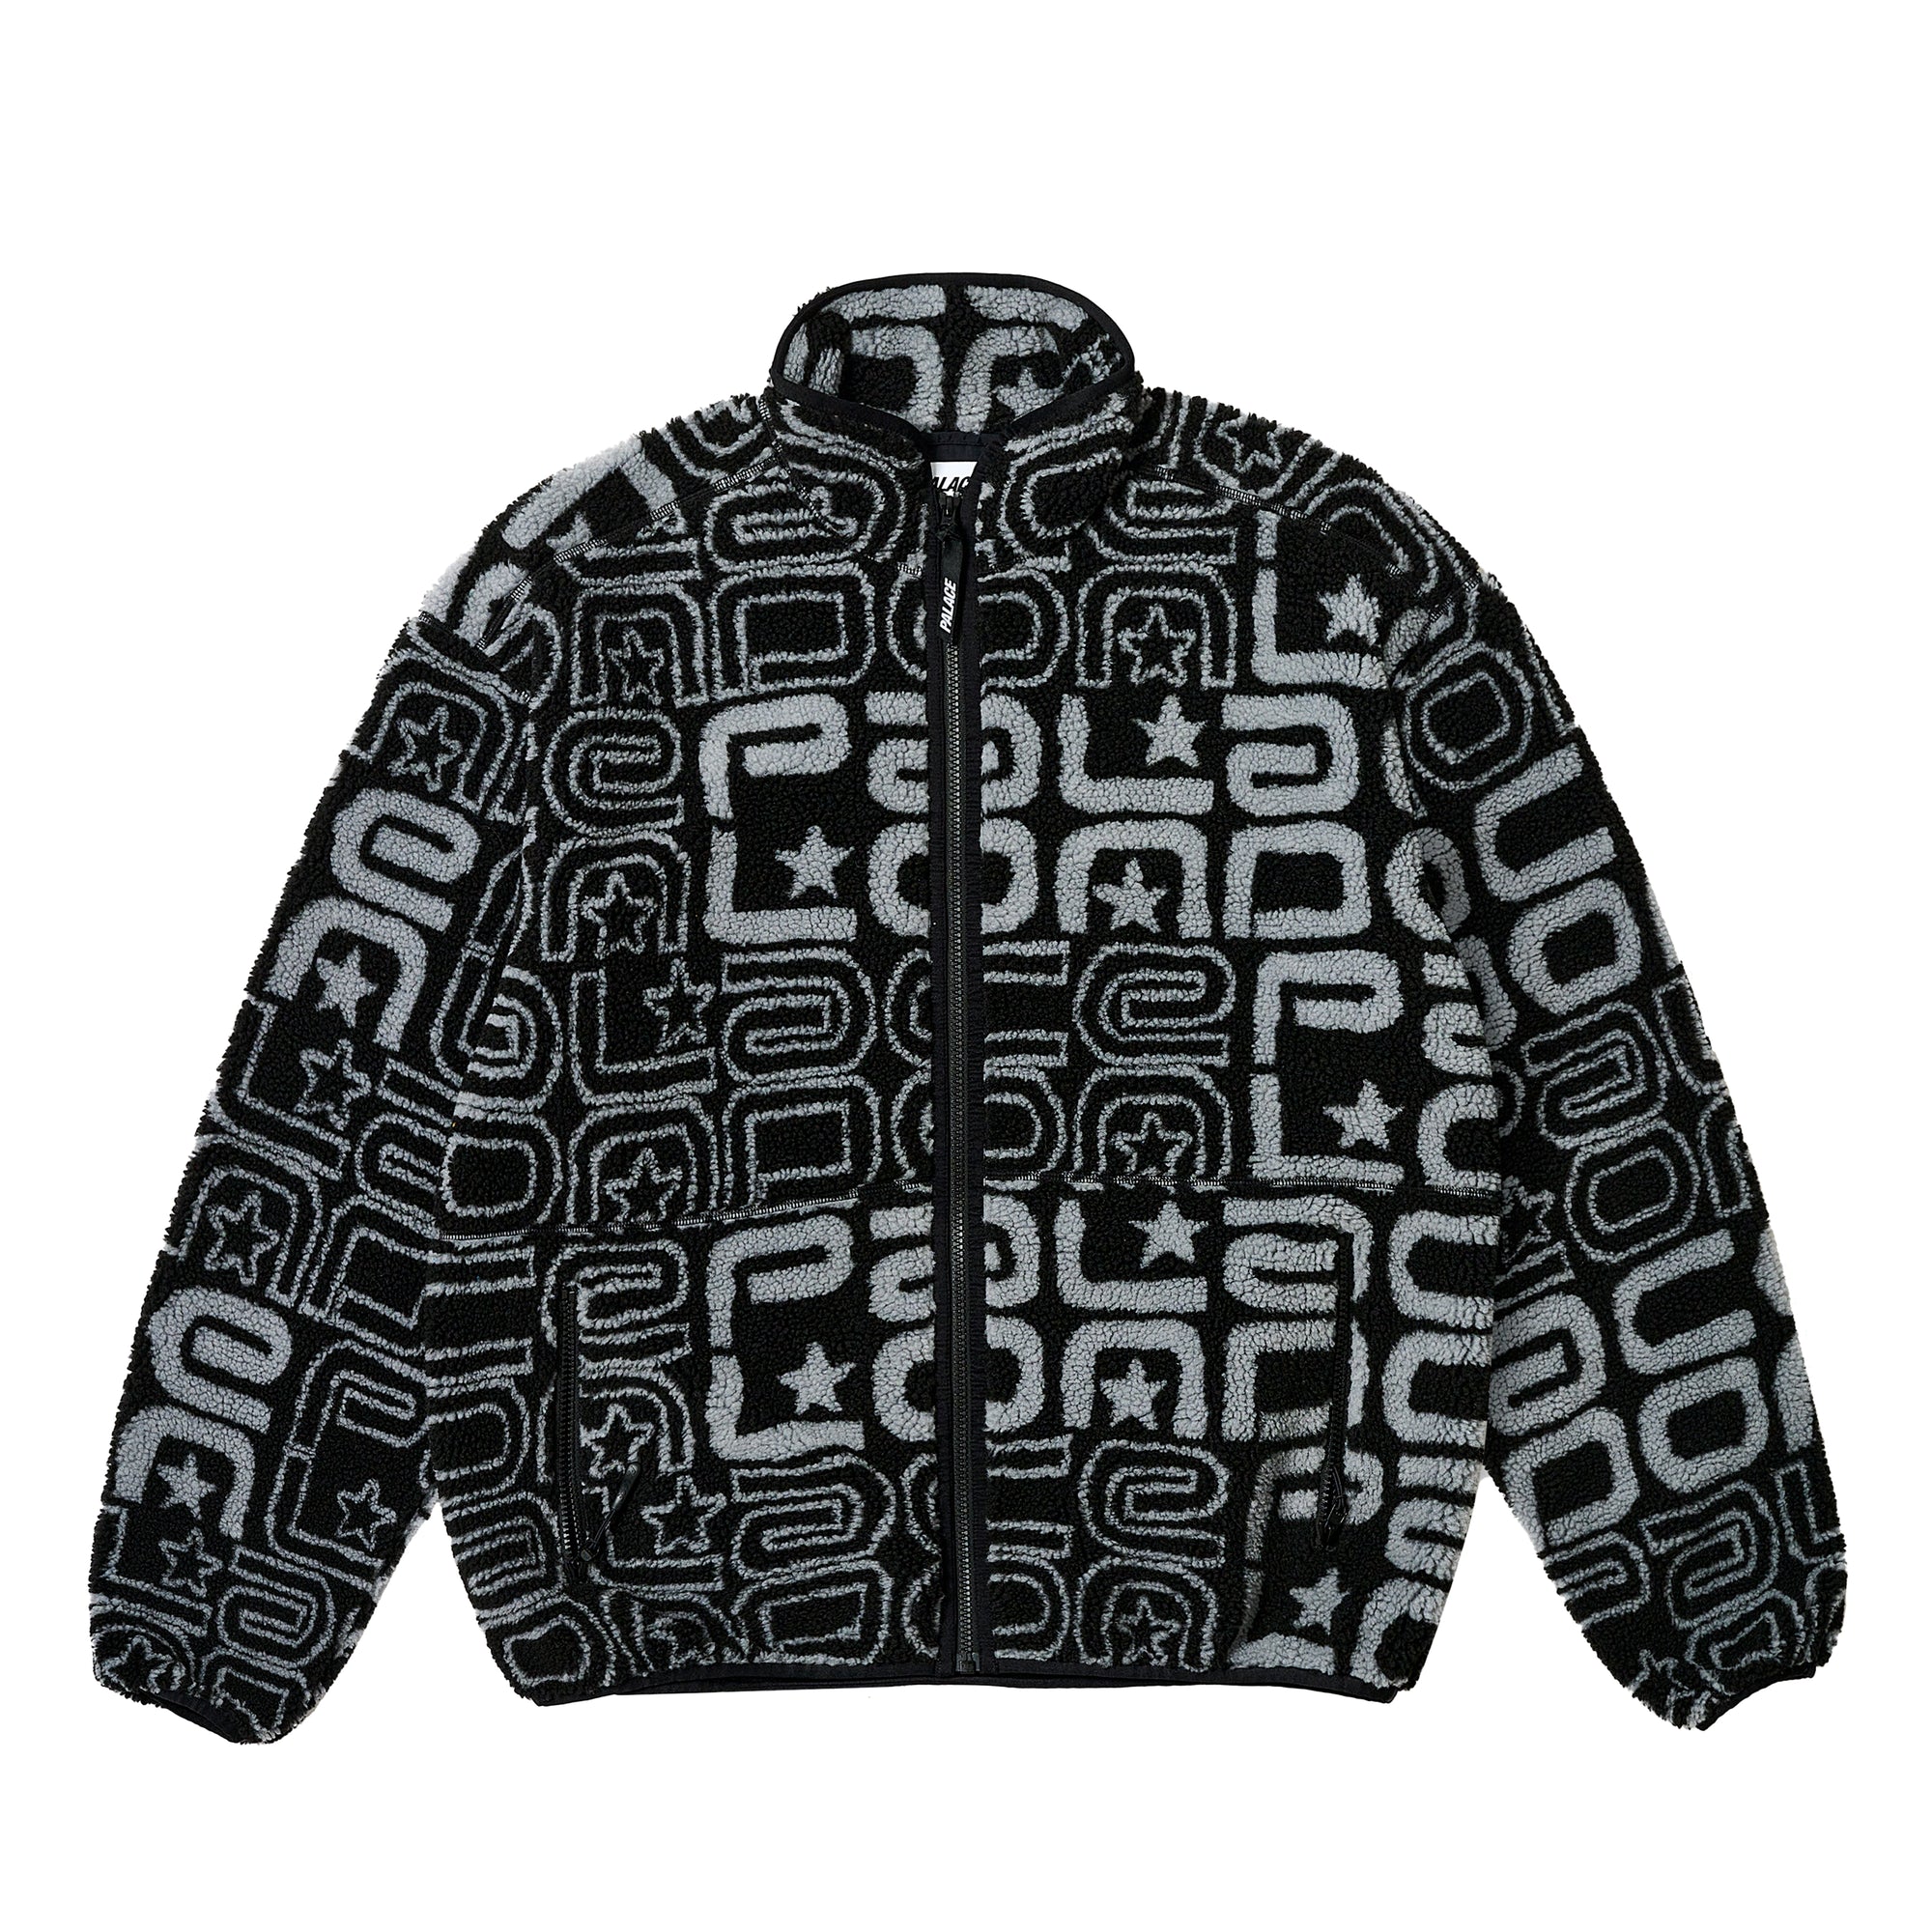 Palace - Men's Joyrex Fleece Jacket - (Black) view 1